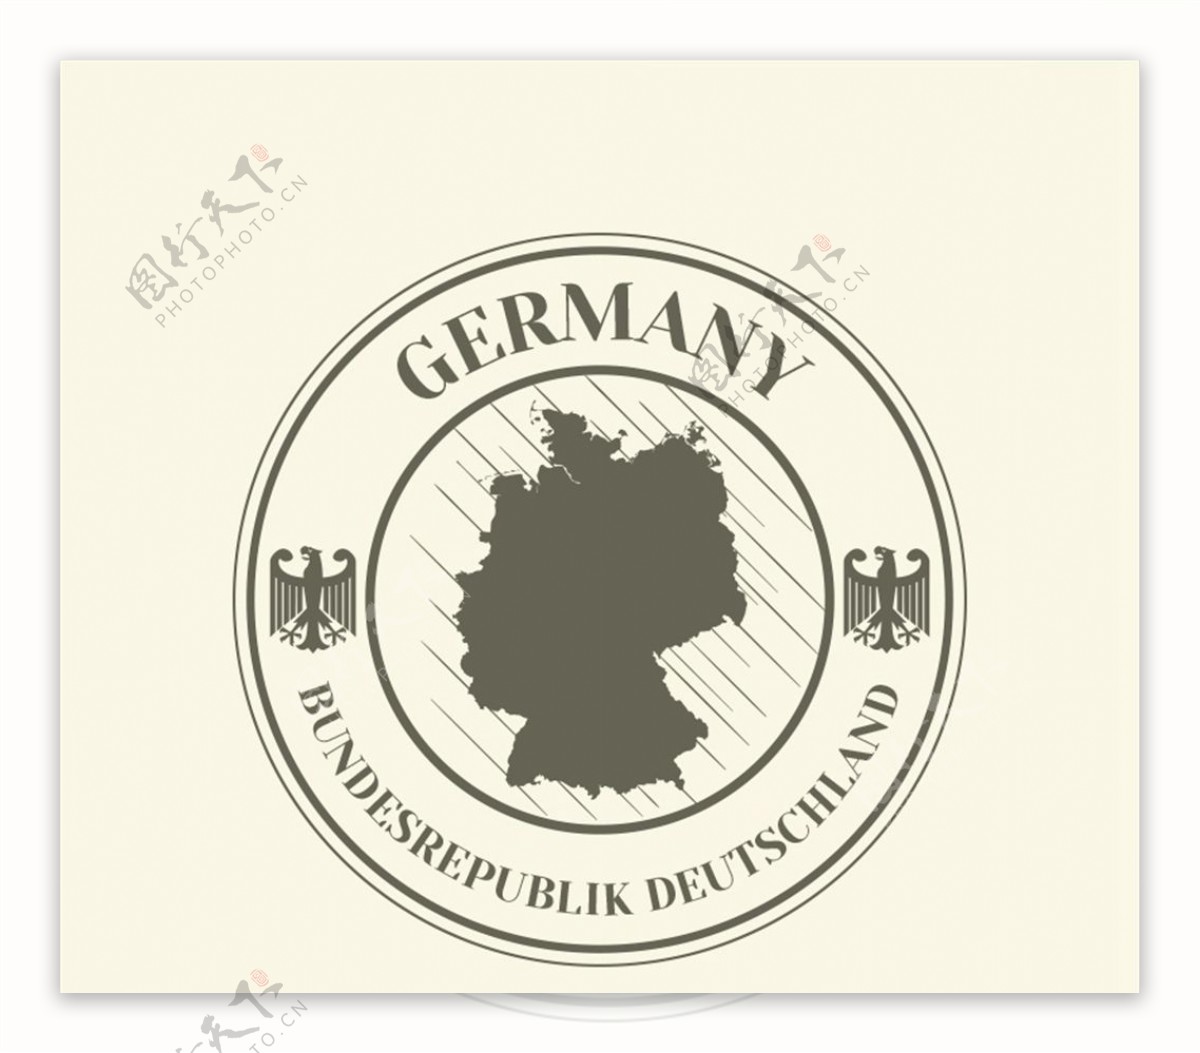 德国标签